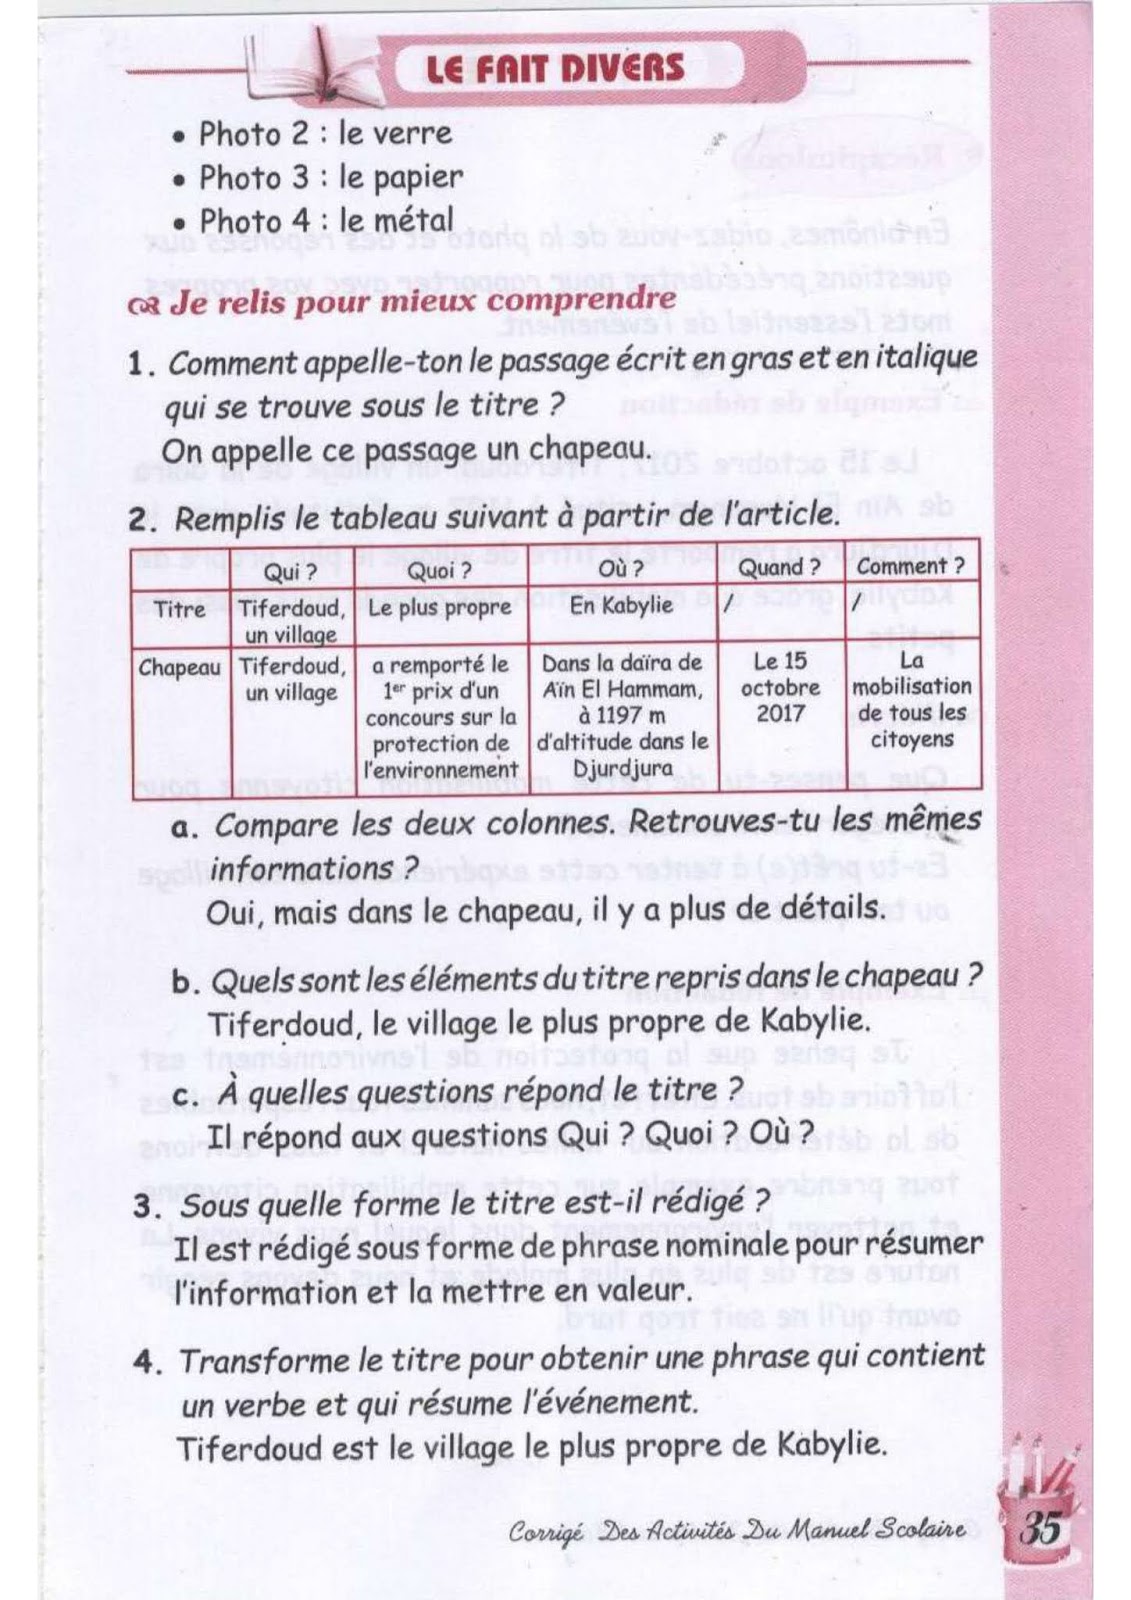 حل تمارين صفحة 35 الفرنسية للسنة الثالثة متوسط - الجيل الثاني